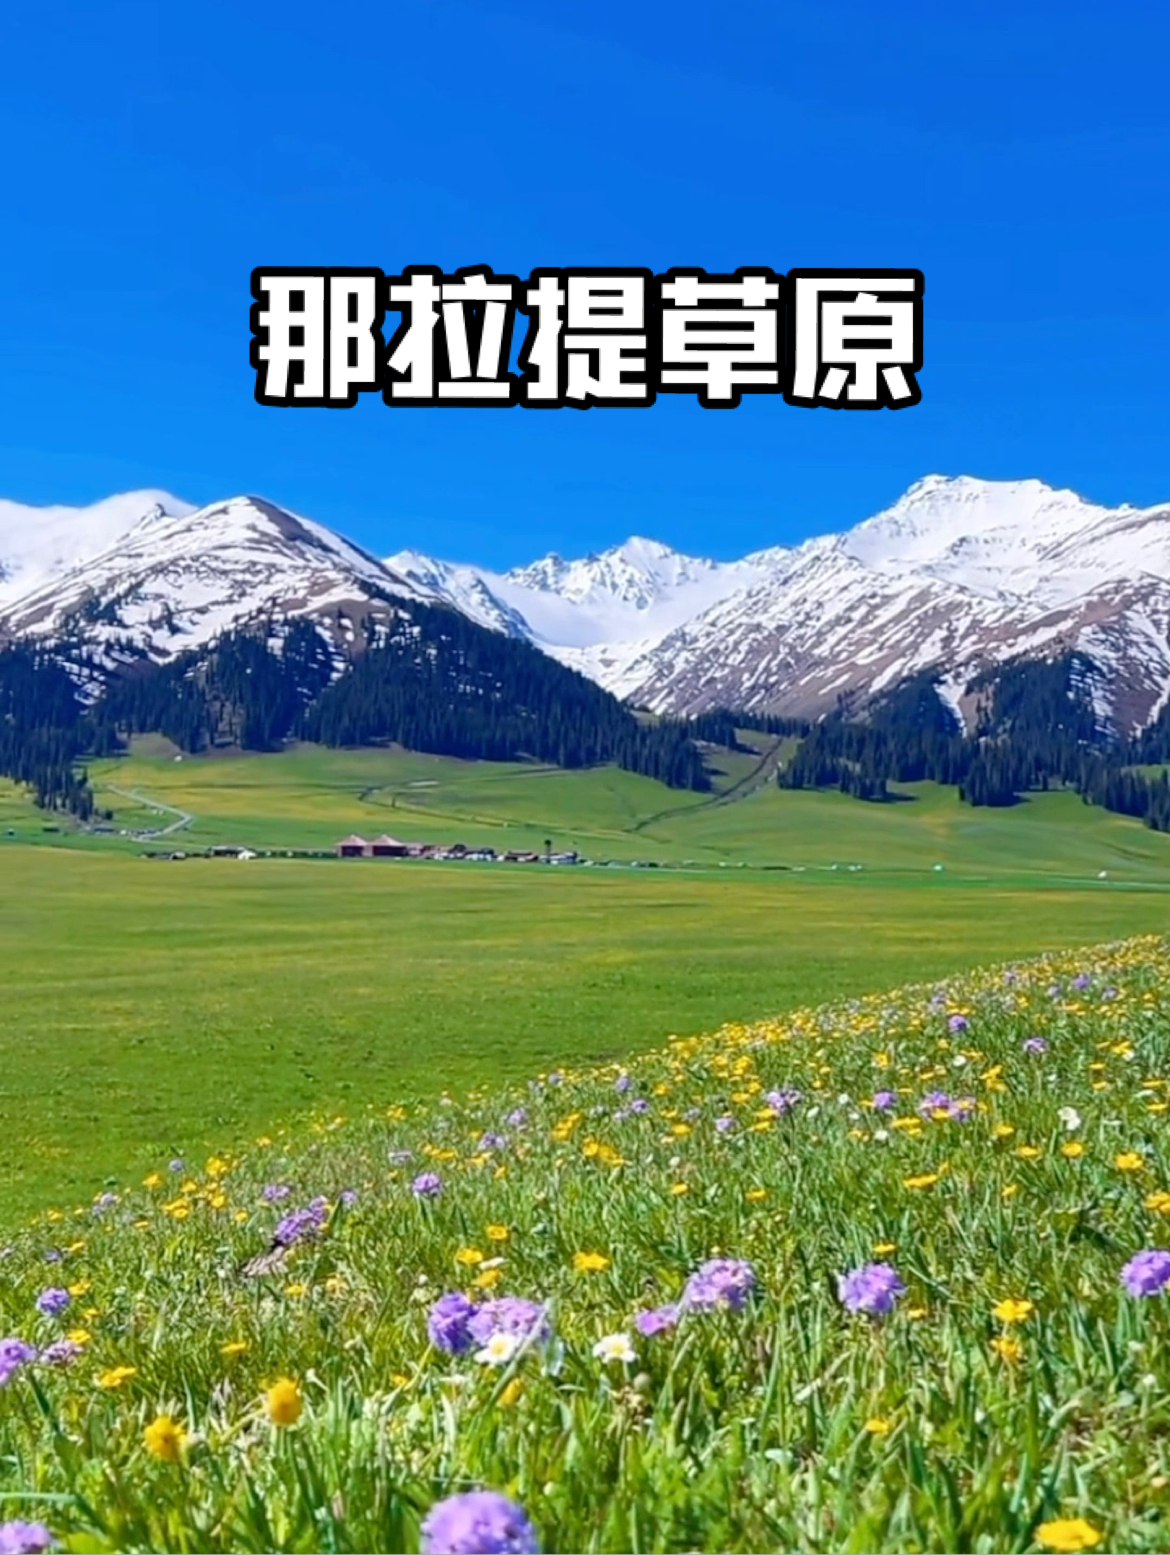 可惜你不来那拉提 又怎会知道春天的那拉提草原有多浪漫。 #治愈系风景 #新疆旅游攻略 #一个人说走就